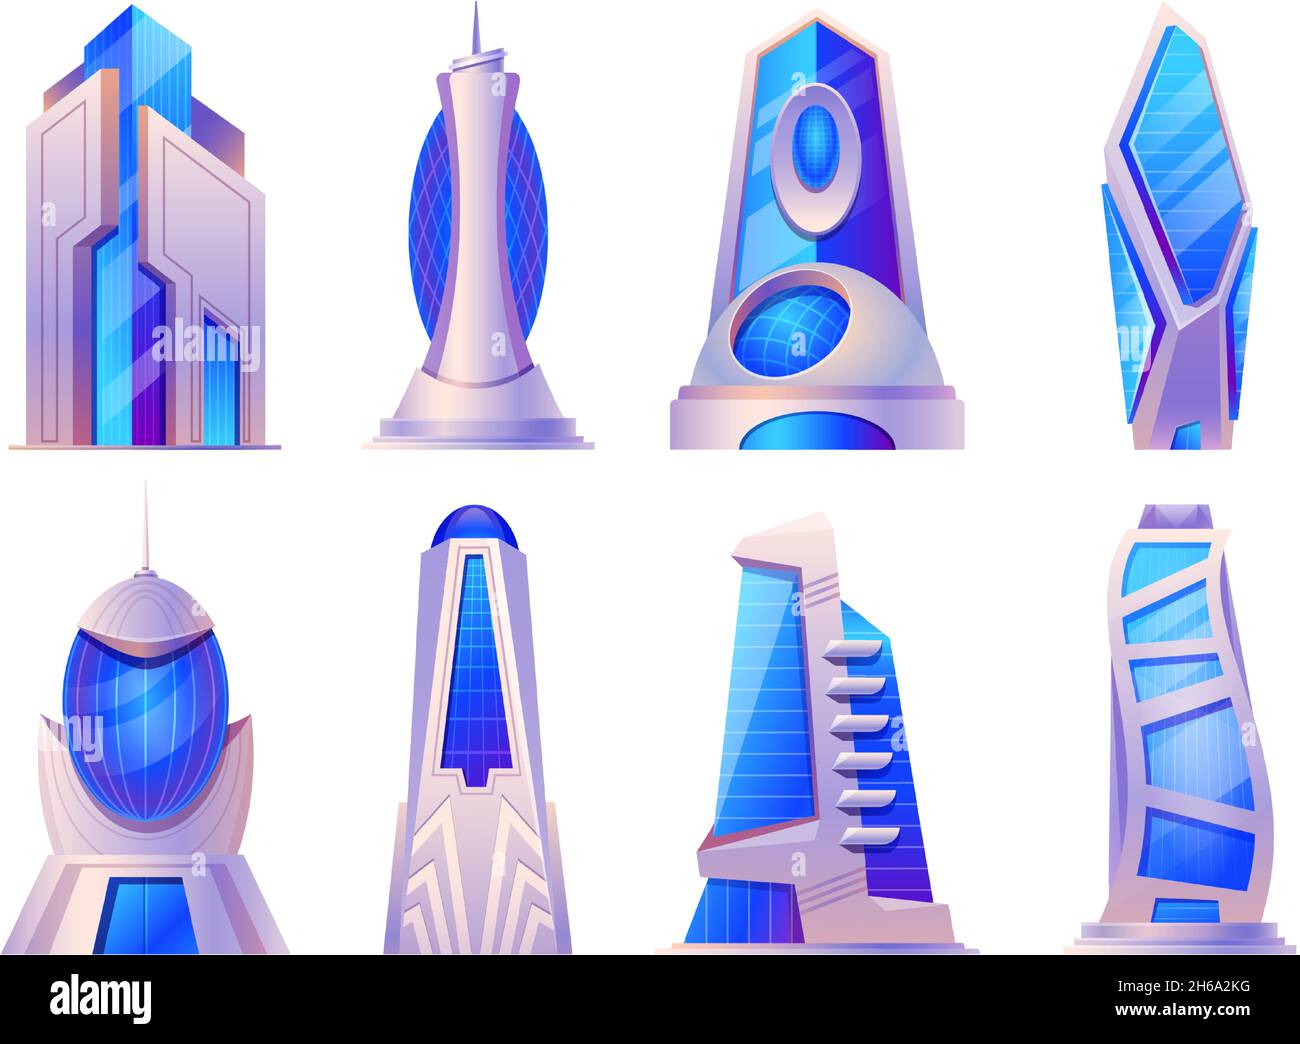 Cartoon futuristische Stadtgebäude und Wolkenkratzer Glaskonstruktion. Alien oder zukünftige Tower Build, Urban Cyberpunk Architektur Vektor-Set Stock Vektor